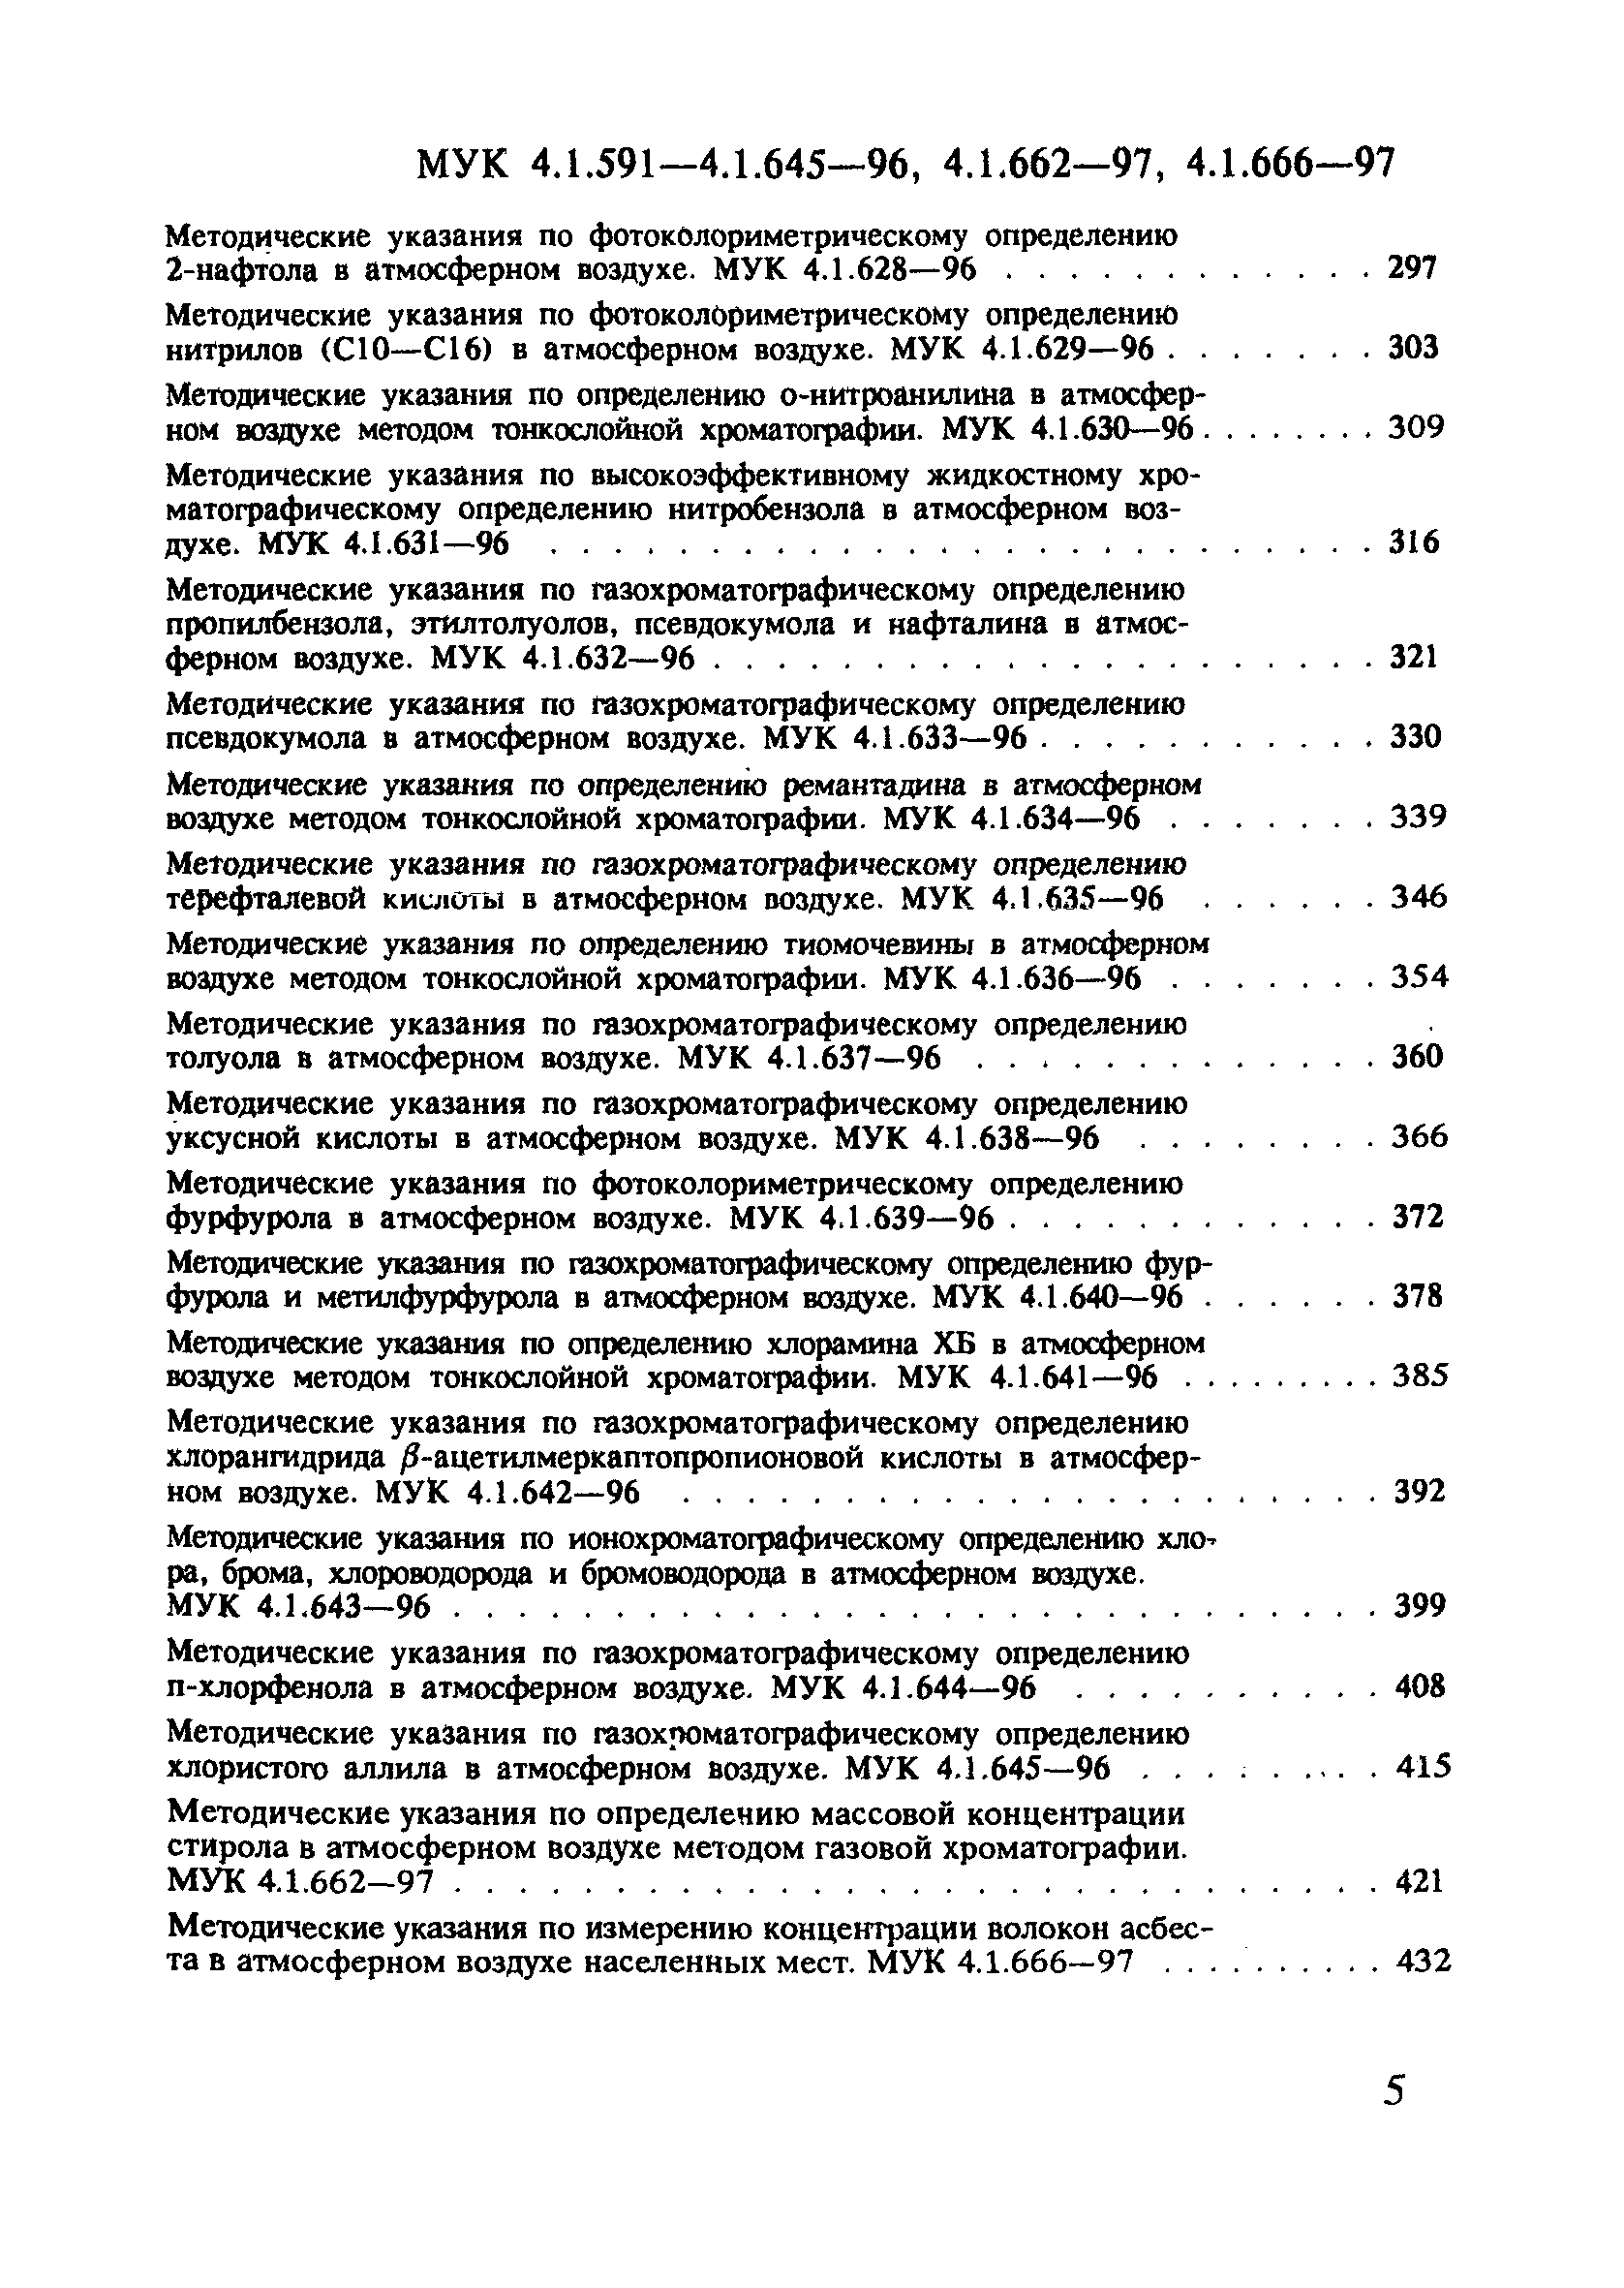 МУК 4.1.610-96